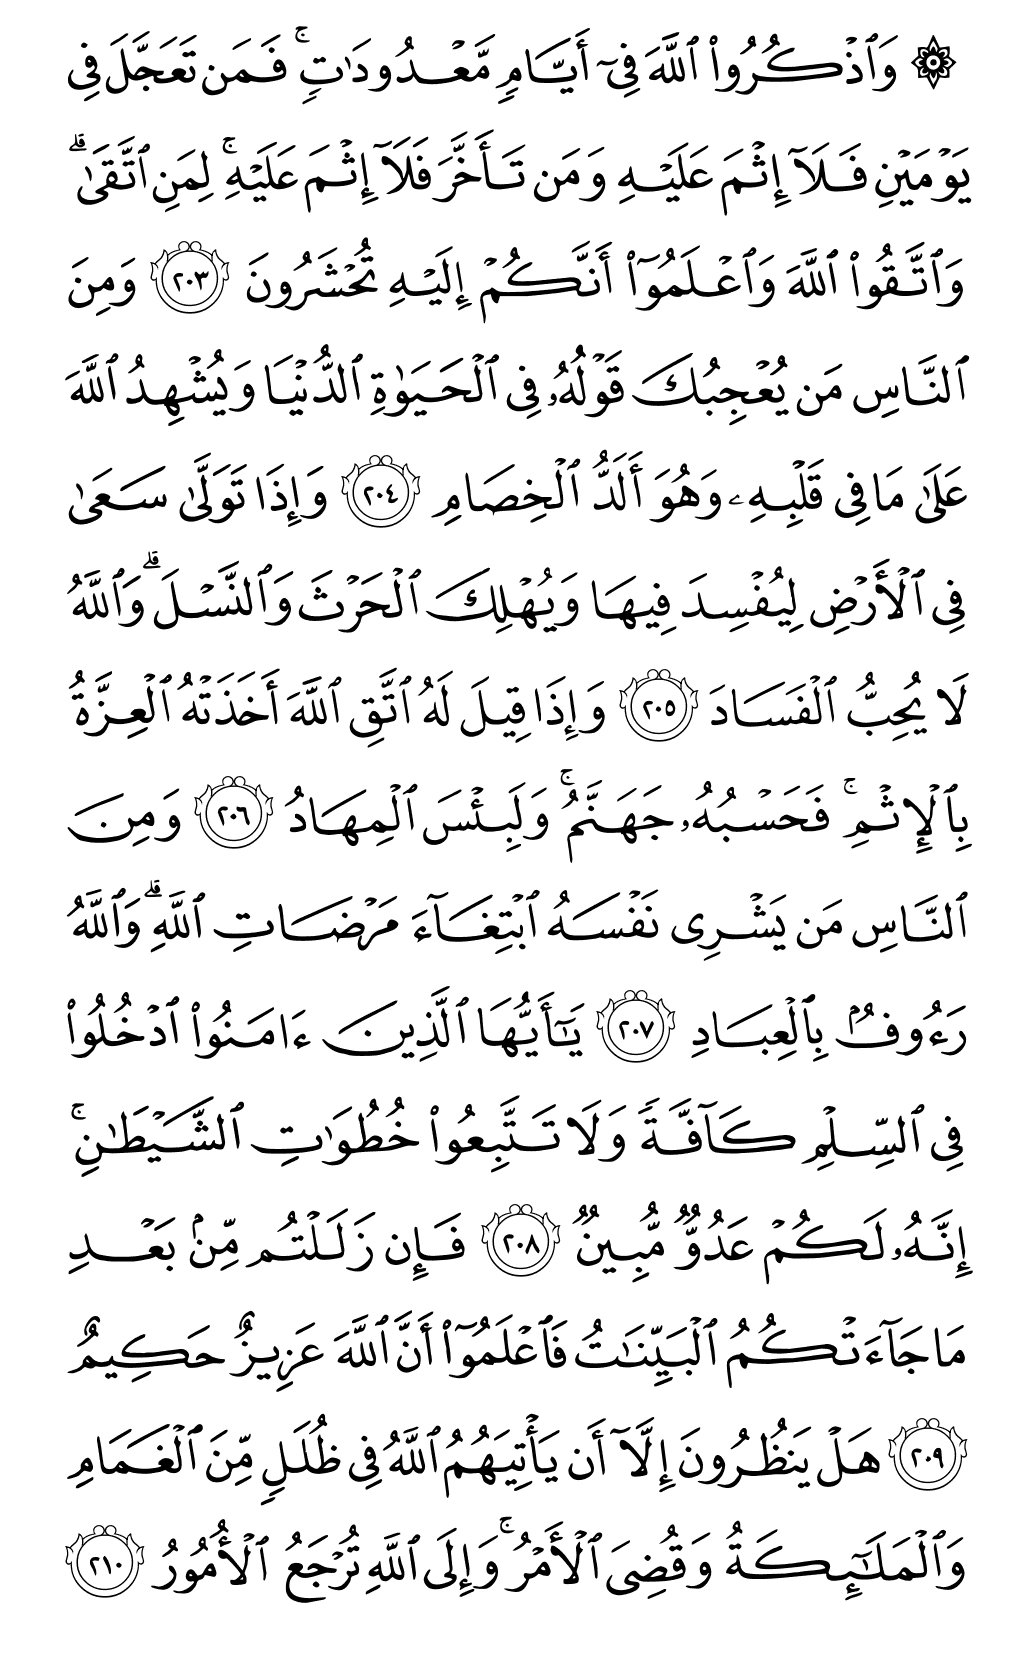 الصفحة رقم 32 من القرآن الكريم